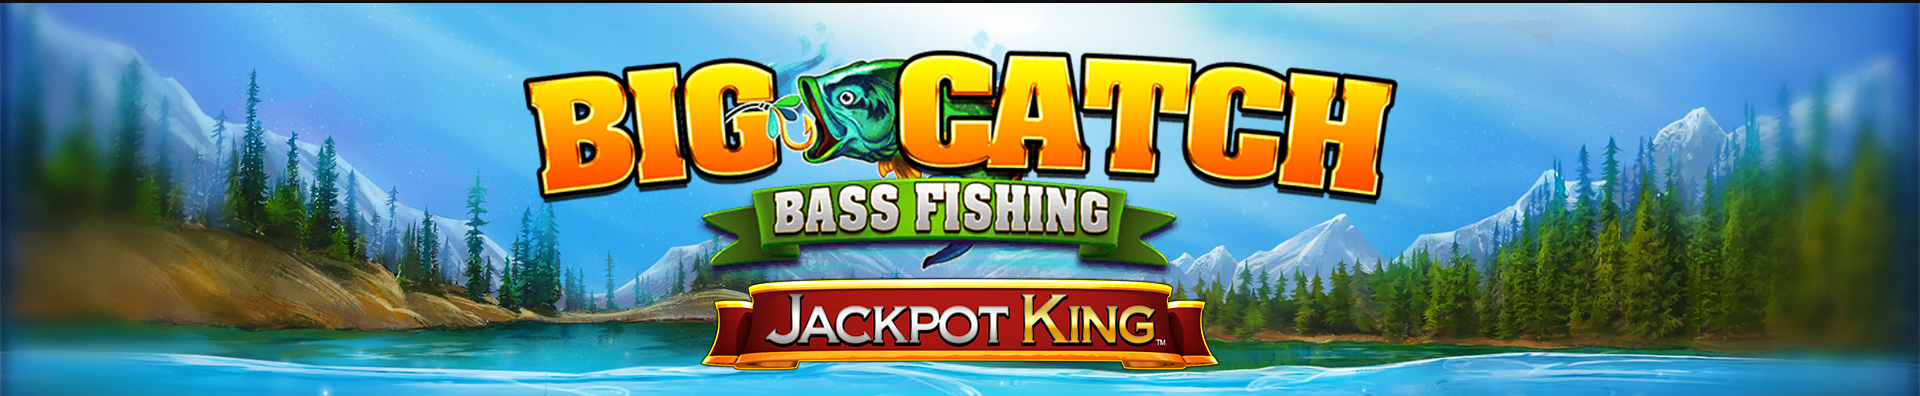 Blueprint Gaming añade nueva slot con sistema Jackpot King a su catálogo de juegos